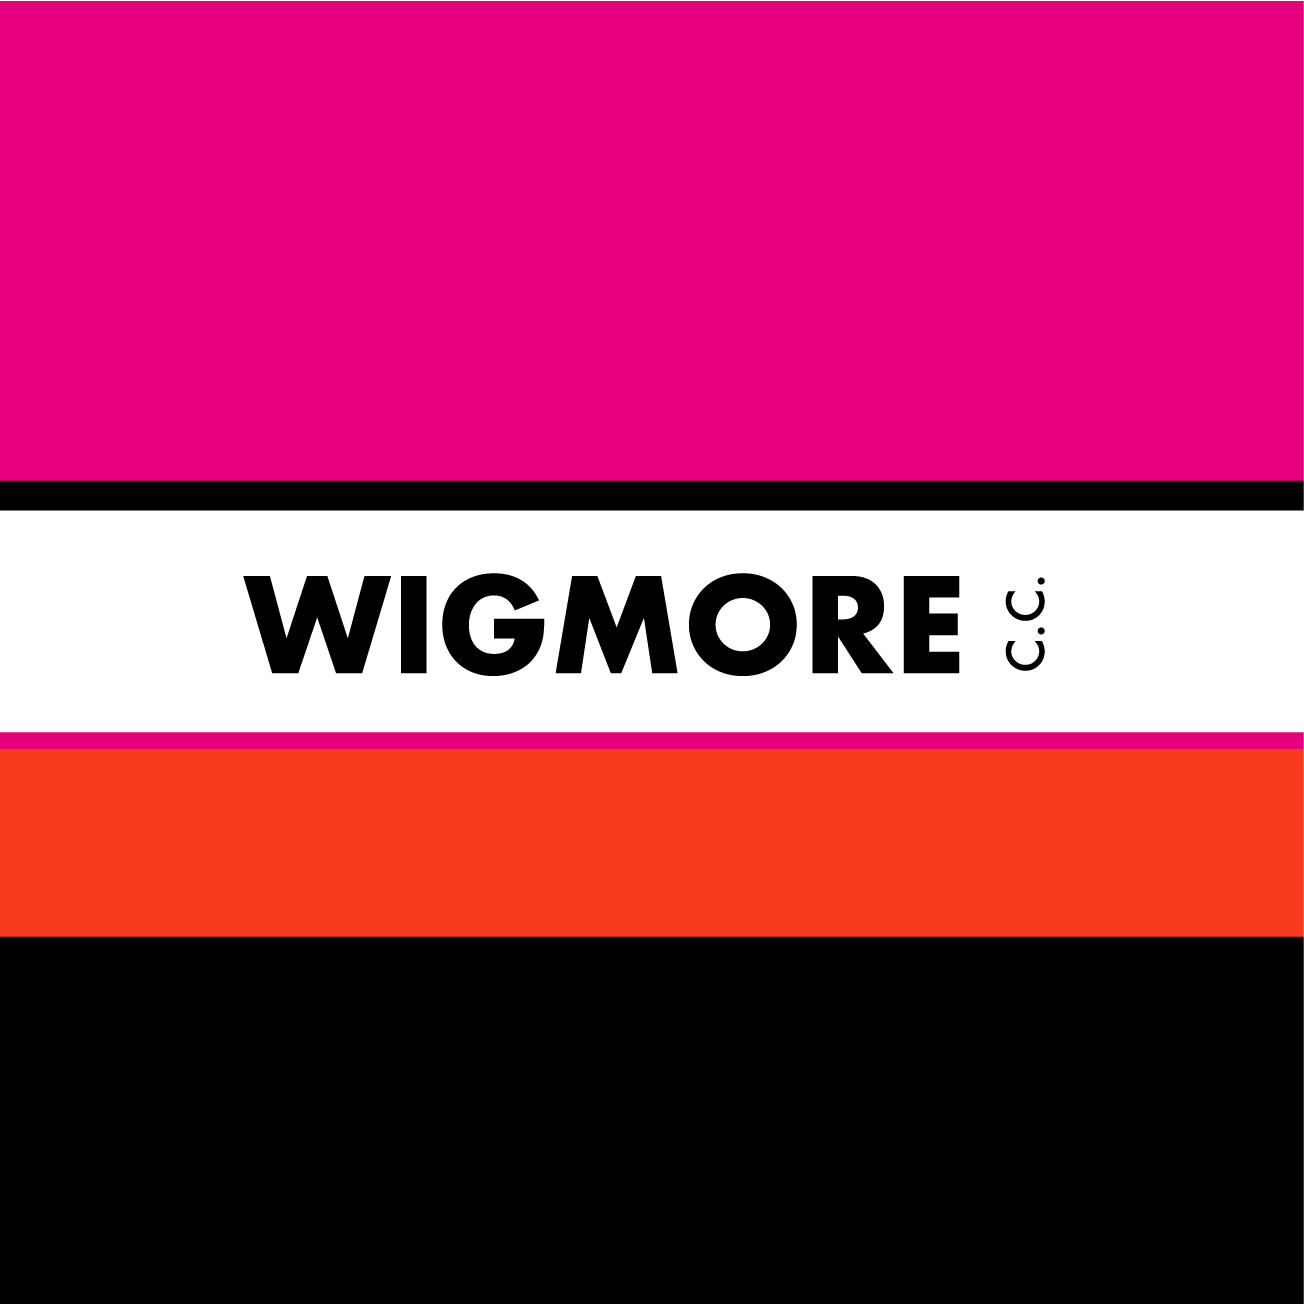 Club Image for WIGMORE CC